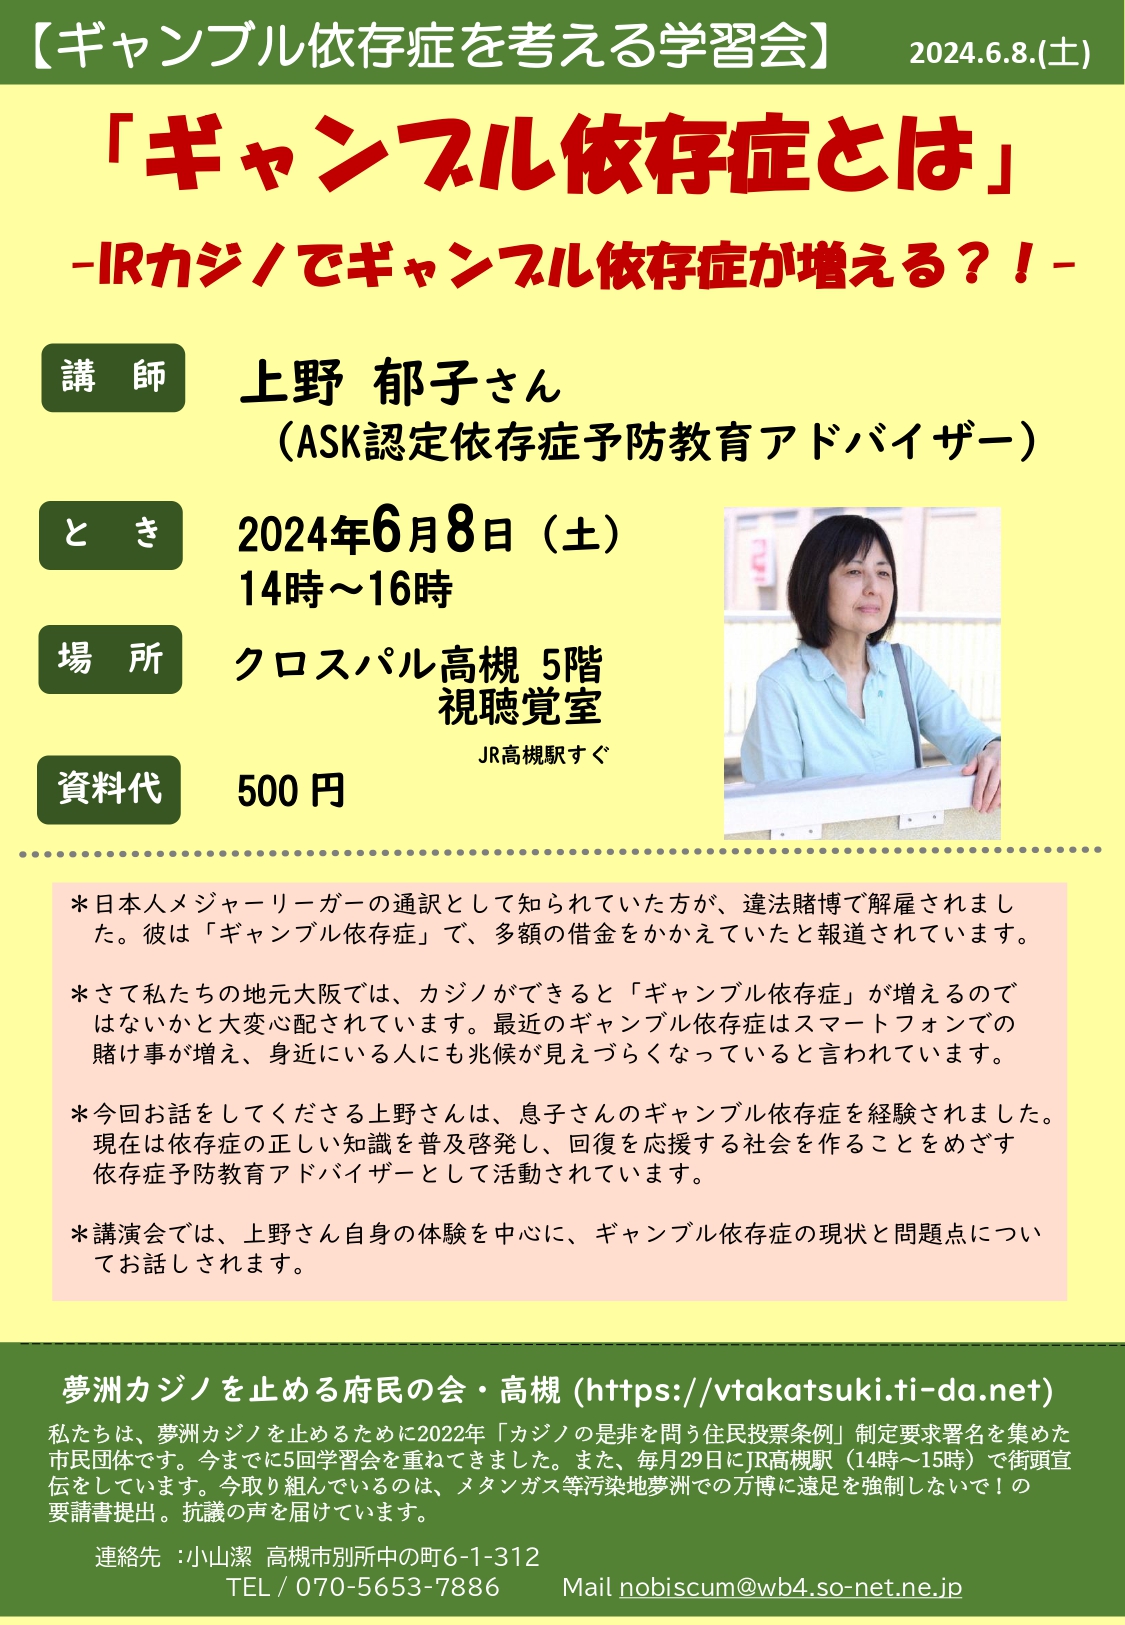 6/8 高槻「ギャンブル依存症」学習会